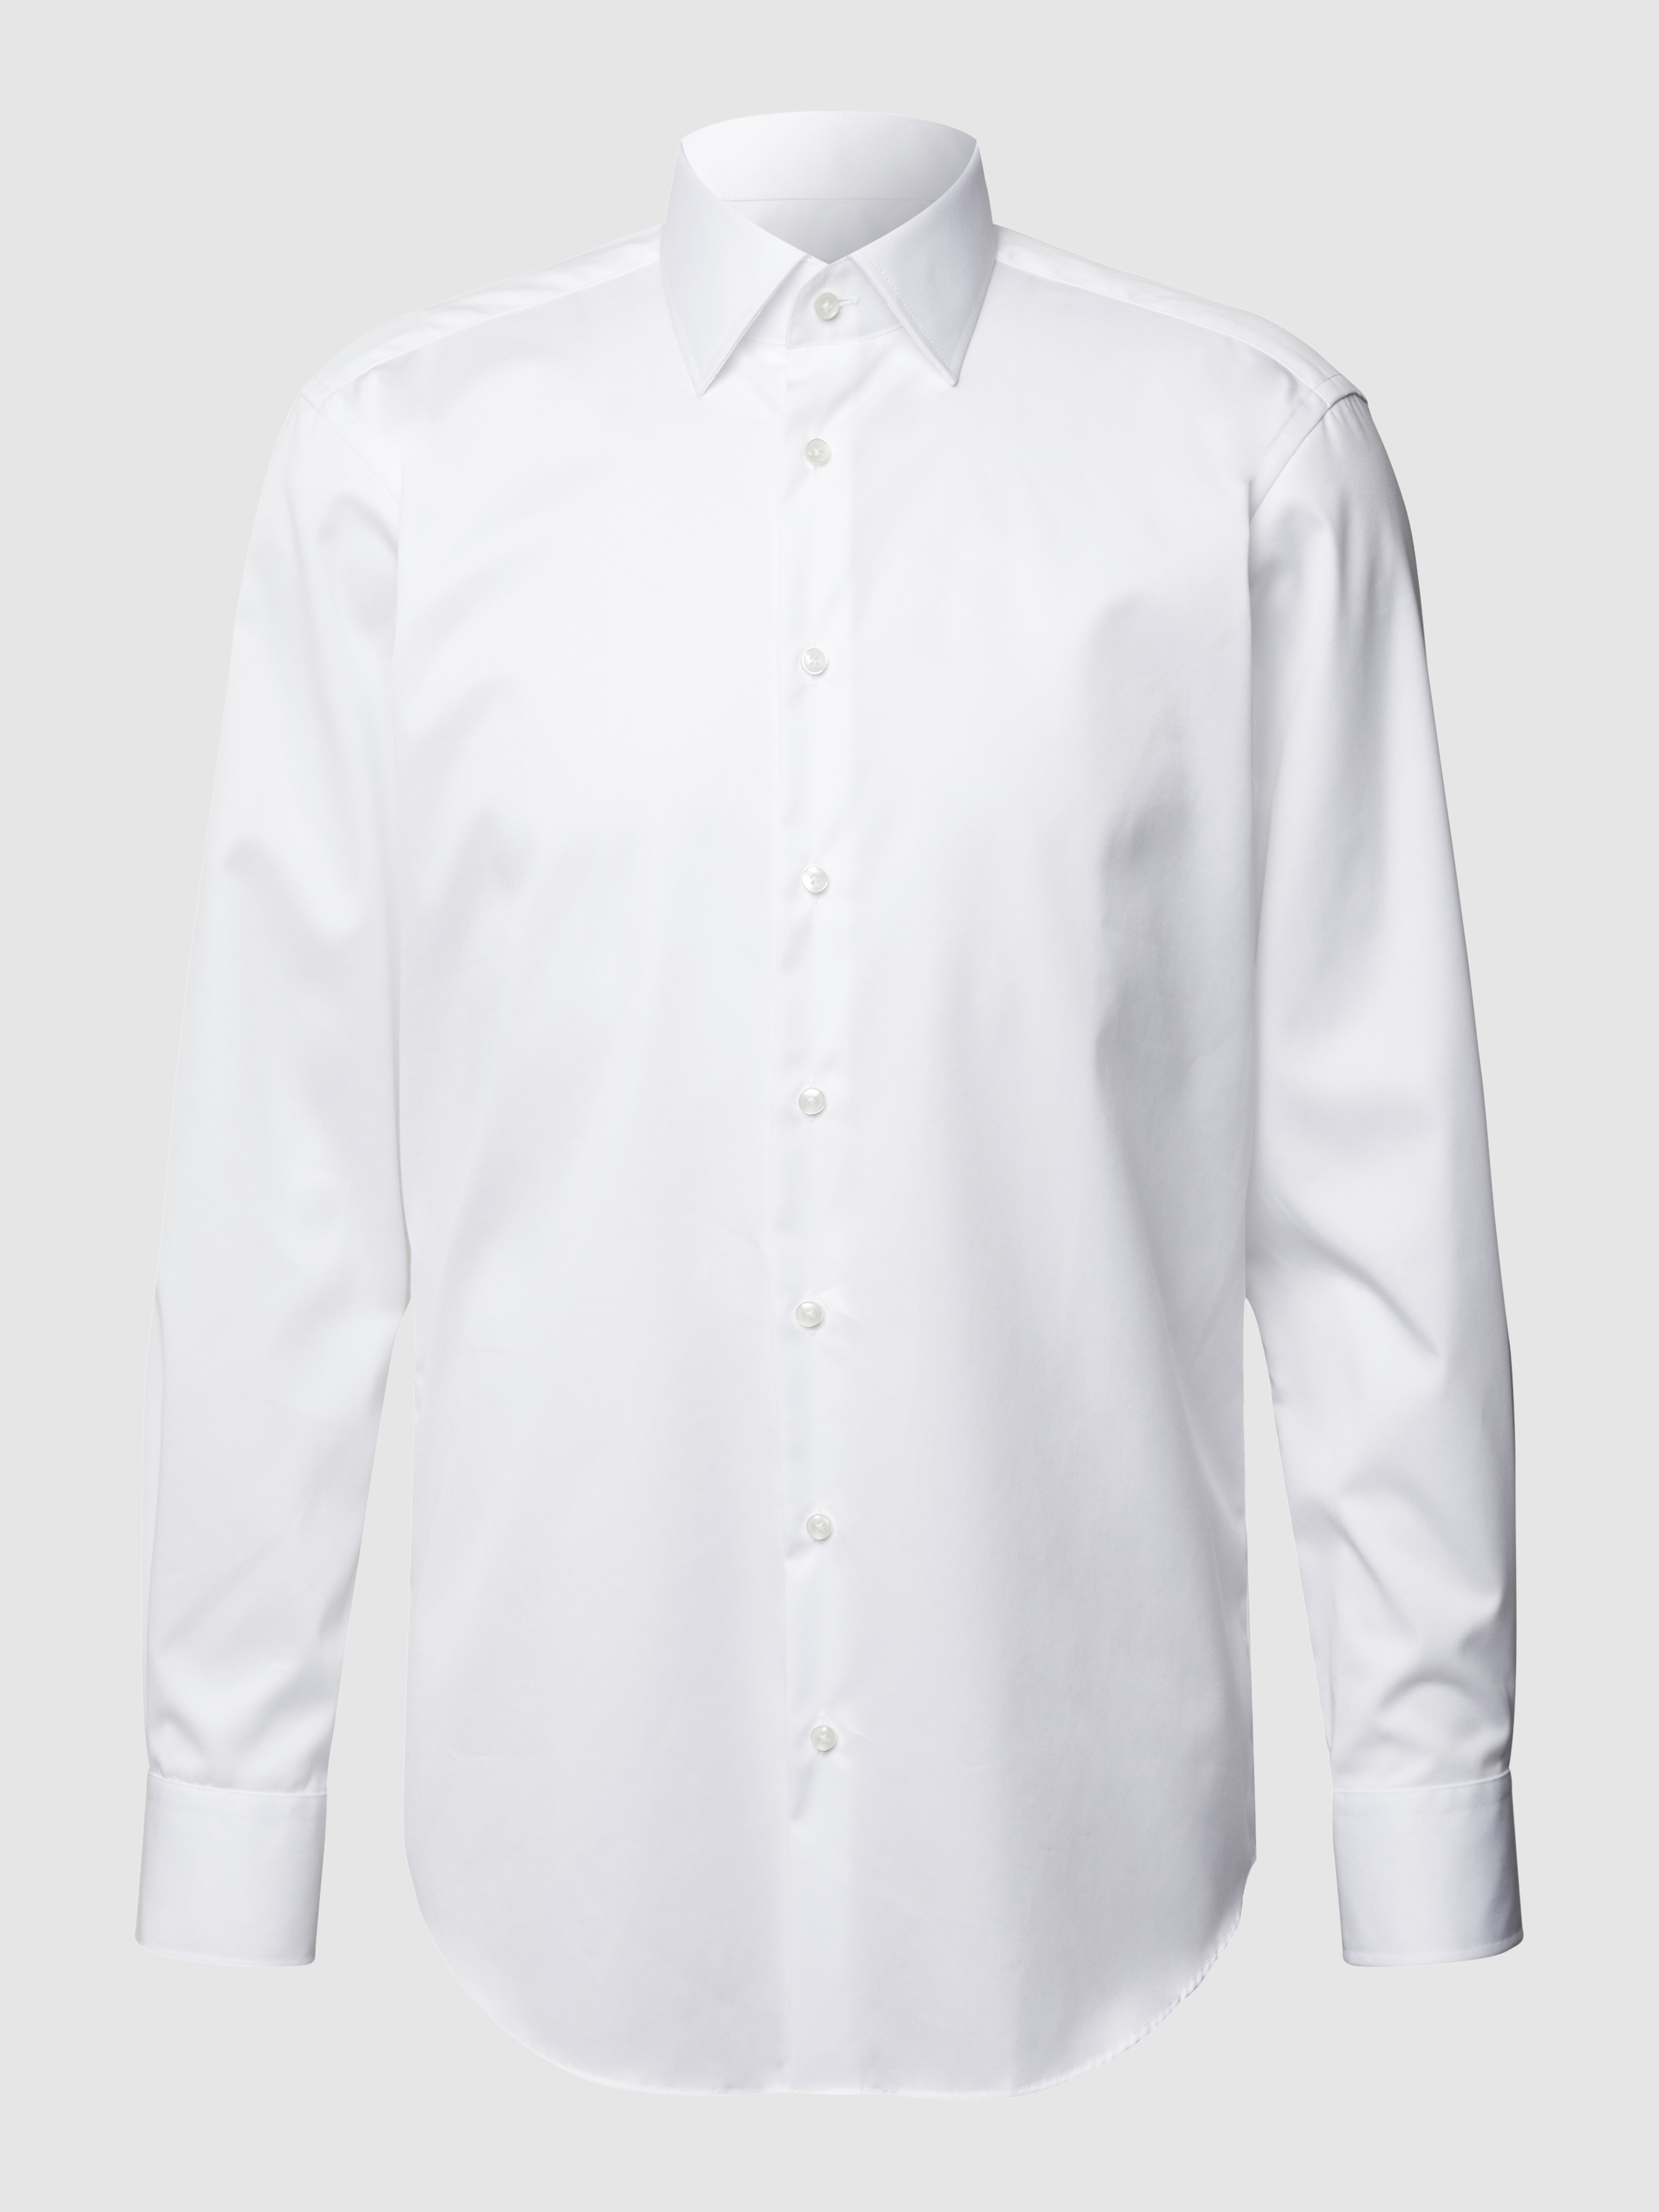 Рубашка мужская Christian Berg Men 1117292 белая 45/46 (доставка из-за рубежа)